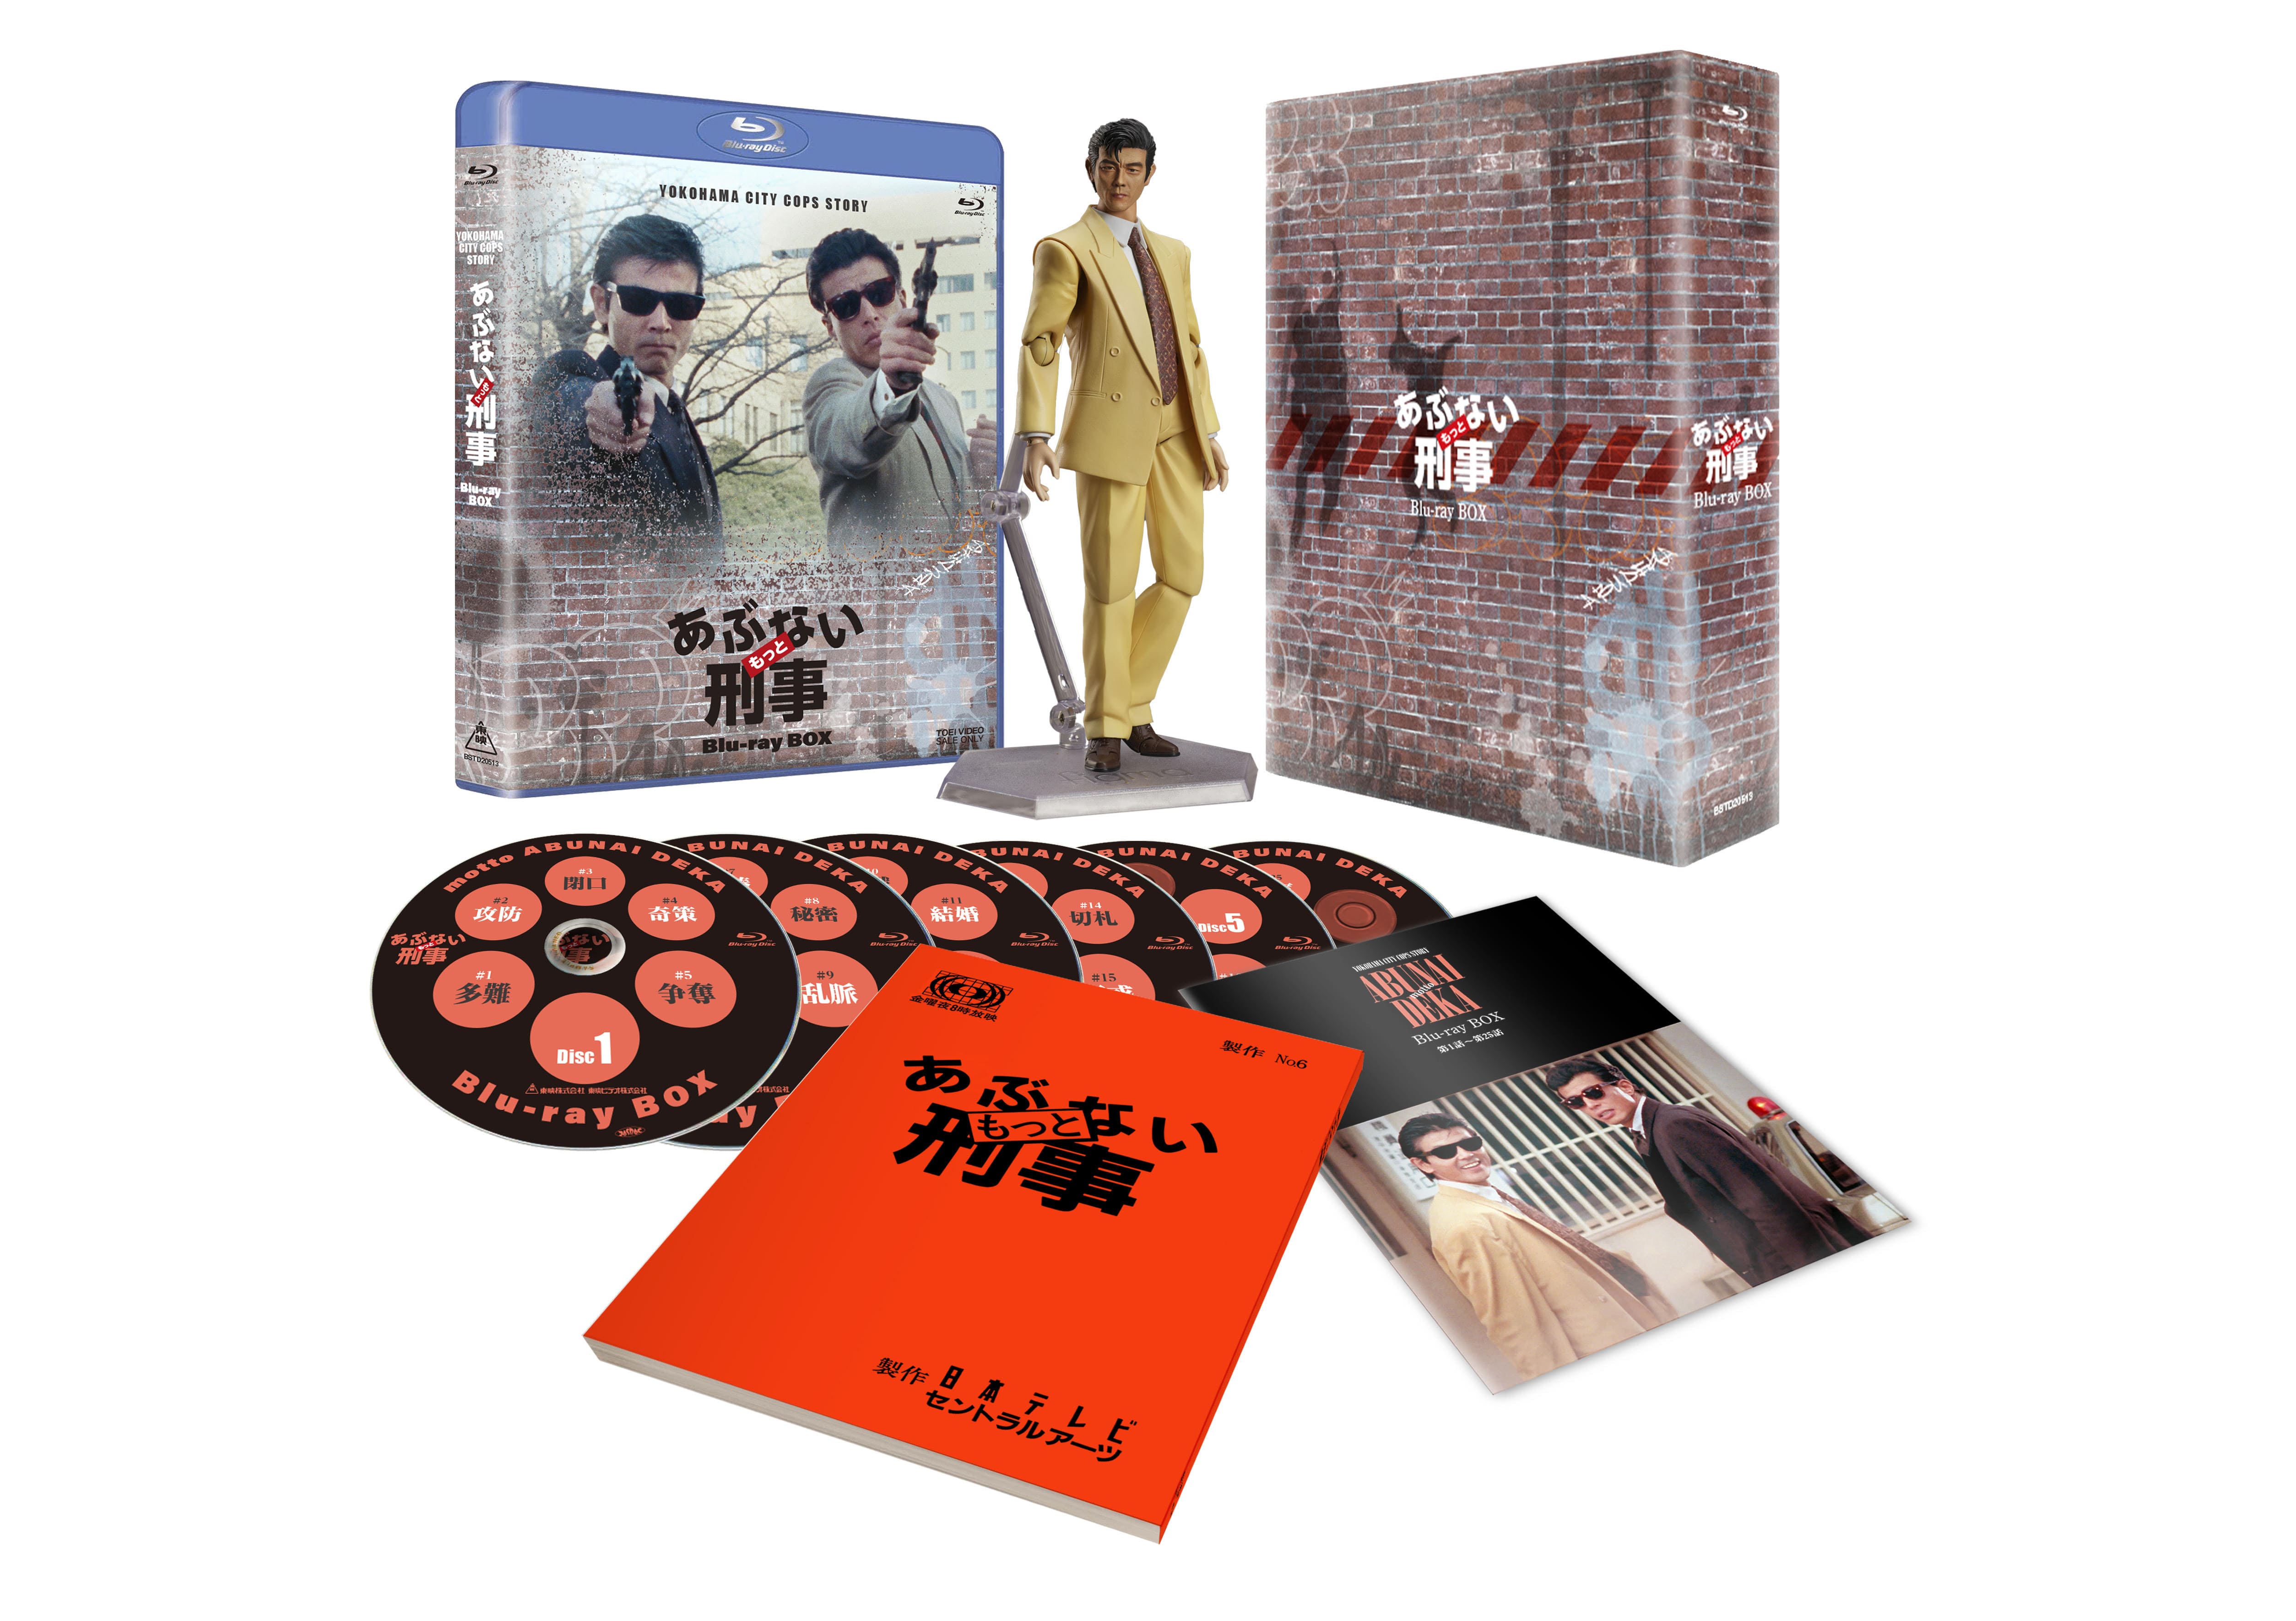 あぶない刑事 BOX 2〈初回生産限定・6枚組〉 日本映画 DVD/ブルーレイ 本・音楽・ゲーム 新春セール中